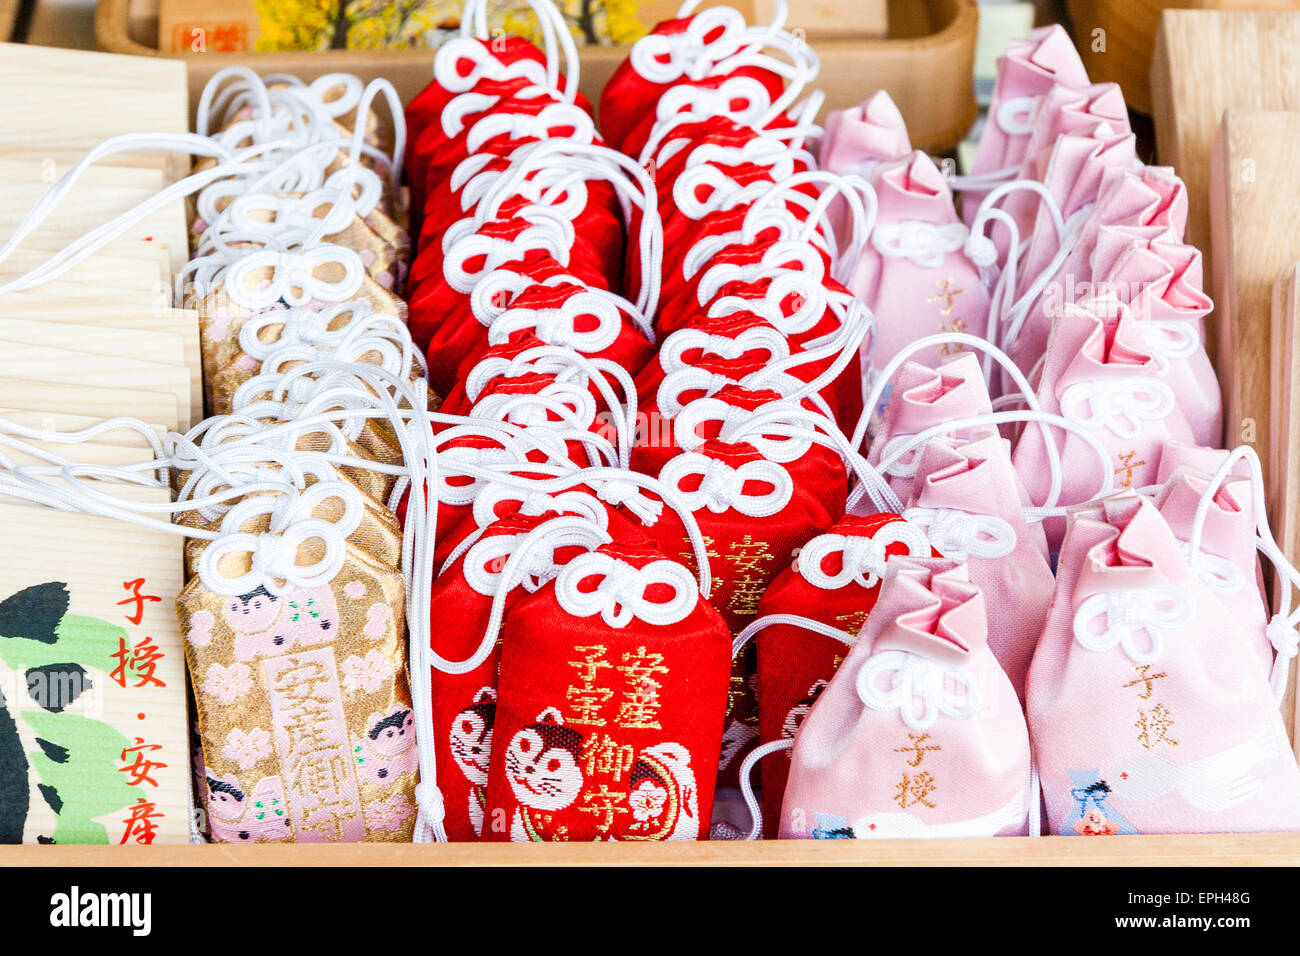 Reihen von roten und rosa omamori Glück Reize mit weißen Krawatten Kordeln, in Reihen auf der Theke eines schintoistischen Schrein in Japan gestapelt. Stockfoto